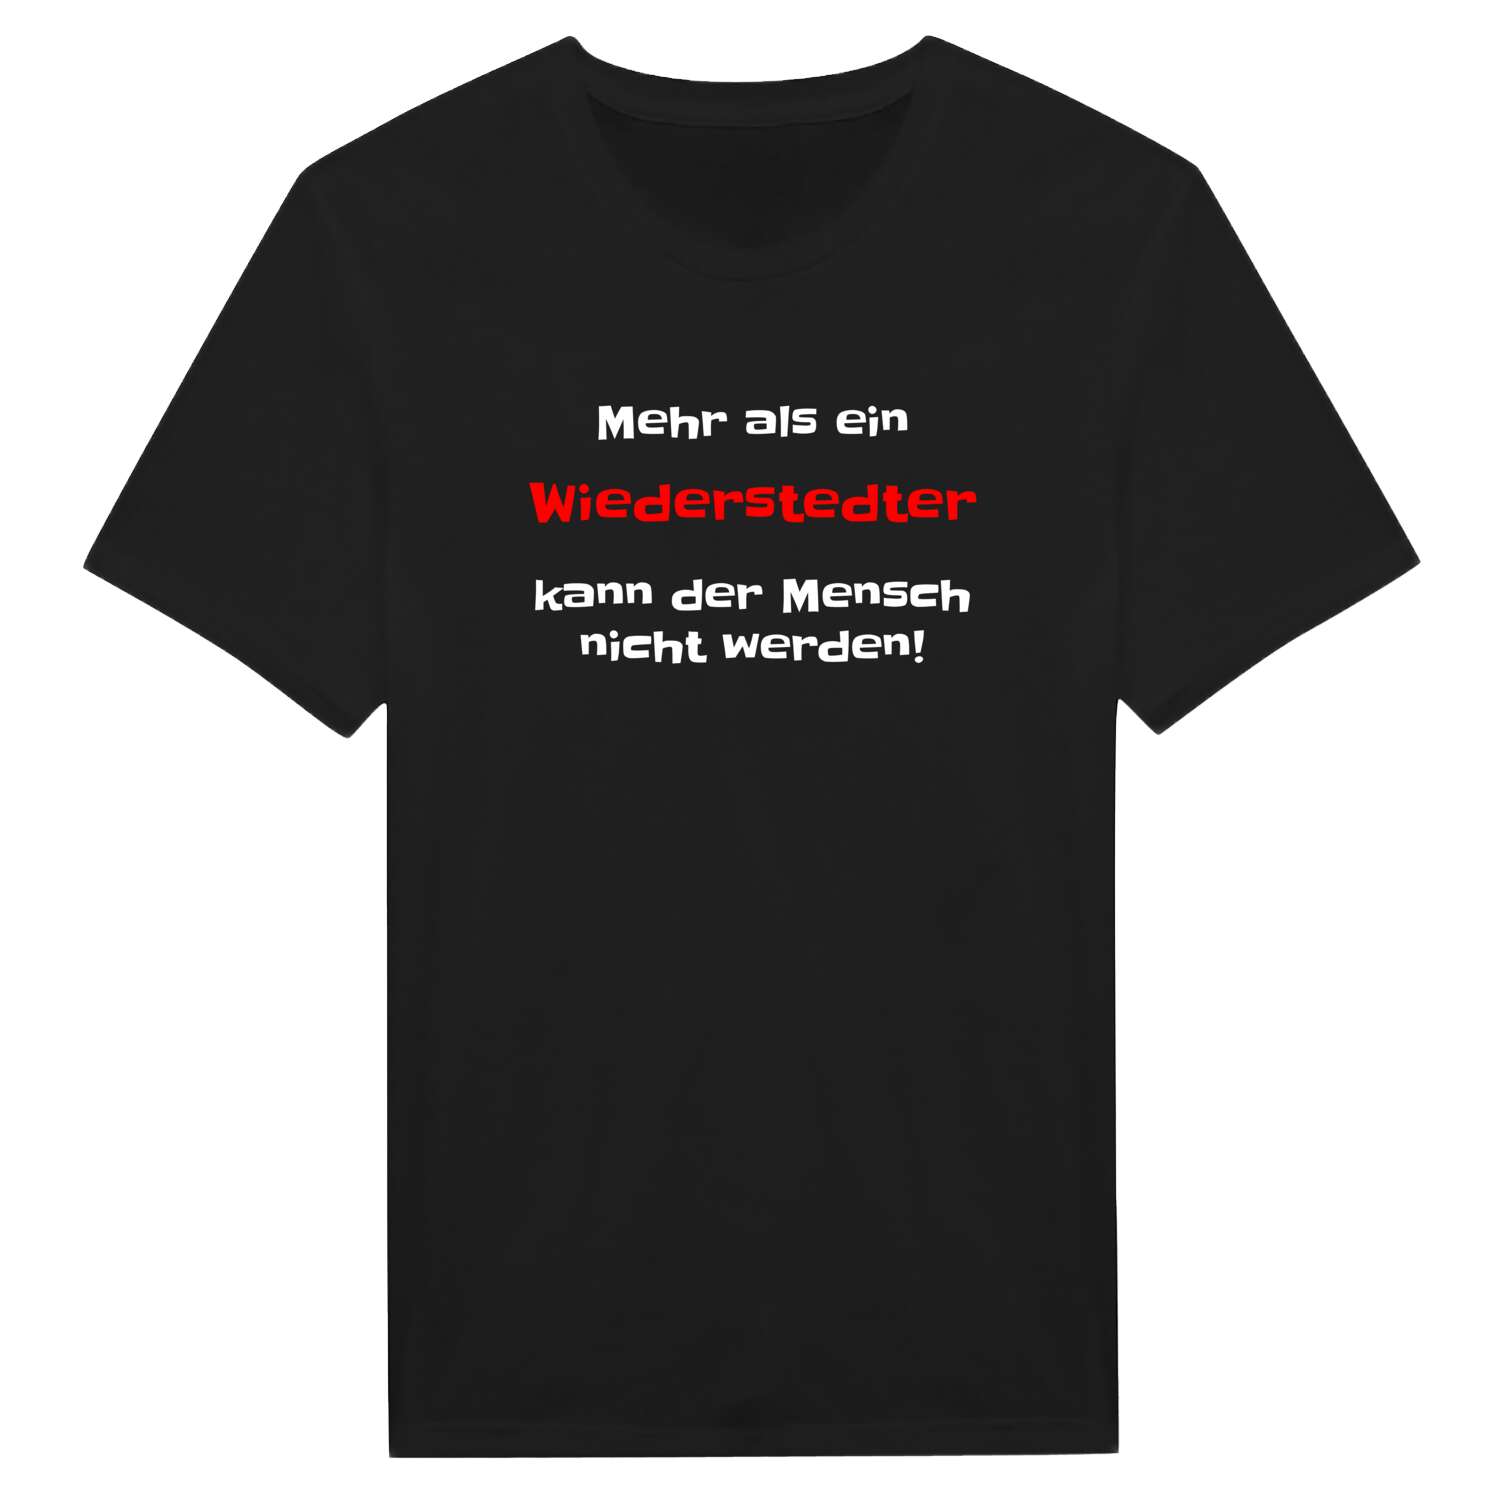 Wiederstedt T-Shirt »Mehr als ein«